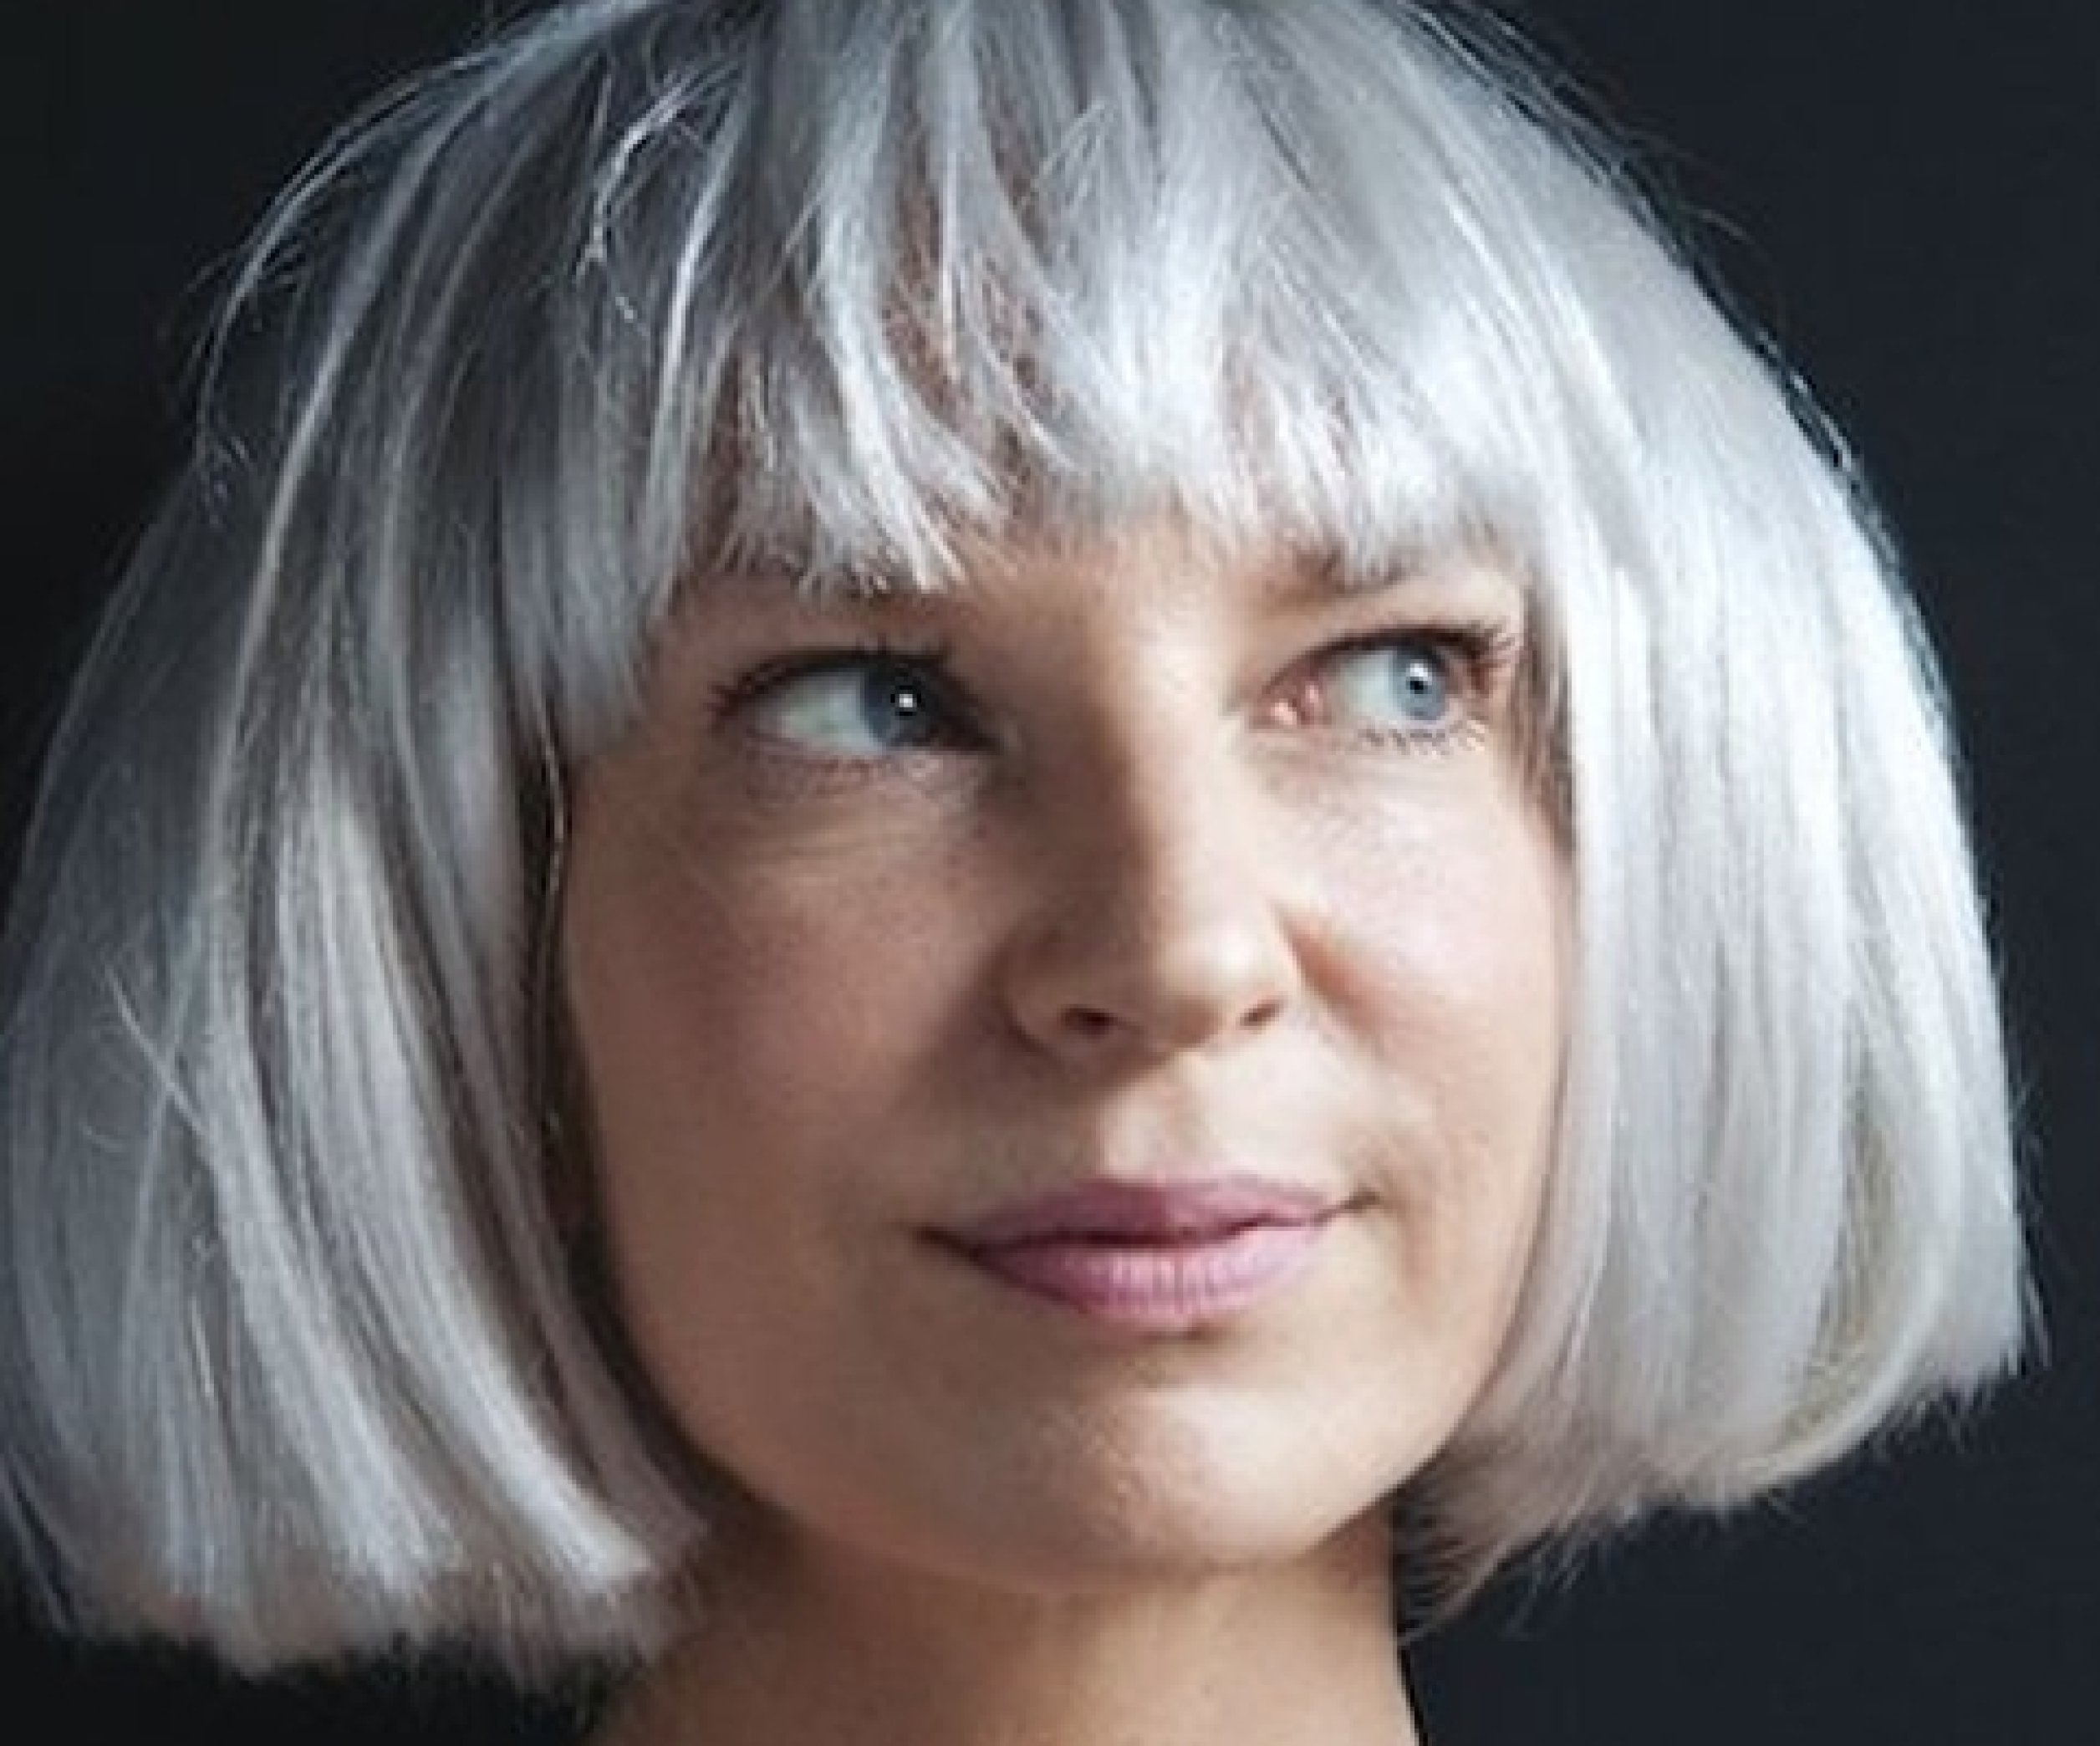 Певица Sia сделала пластику и перестала скрывать лицо. Читайте на prachka-mira.ru